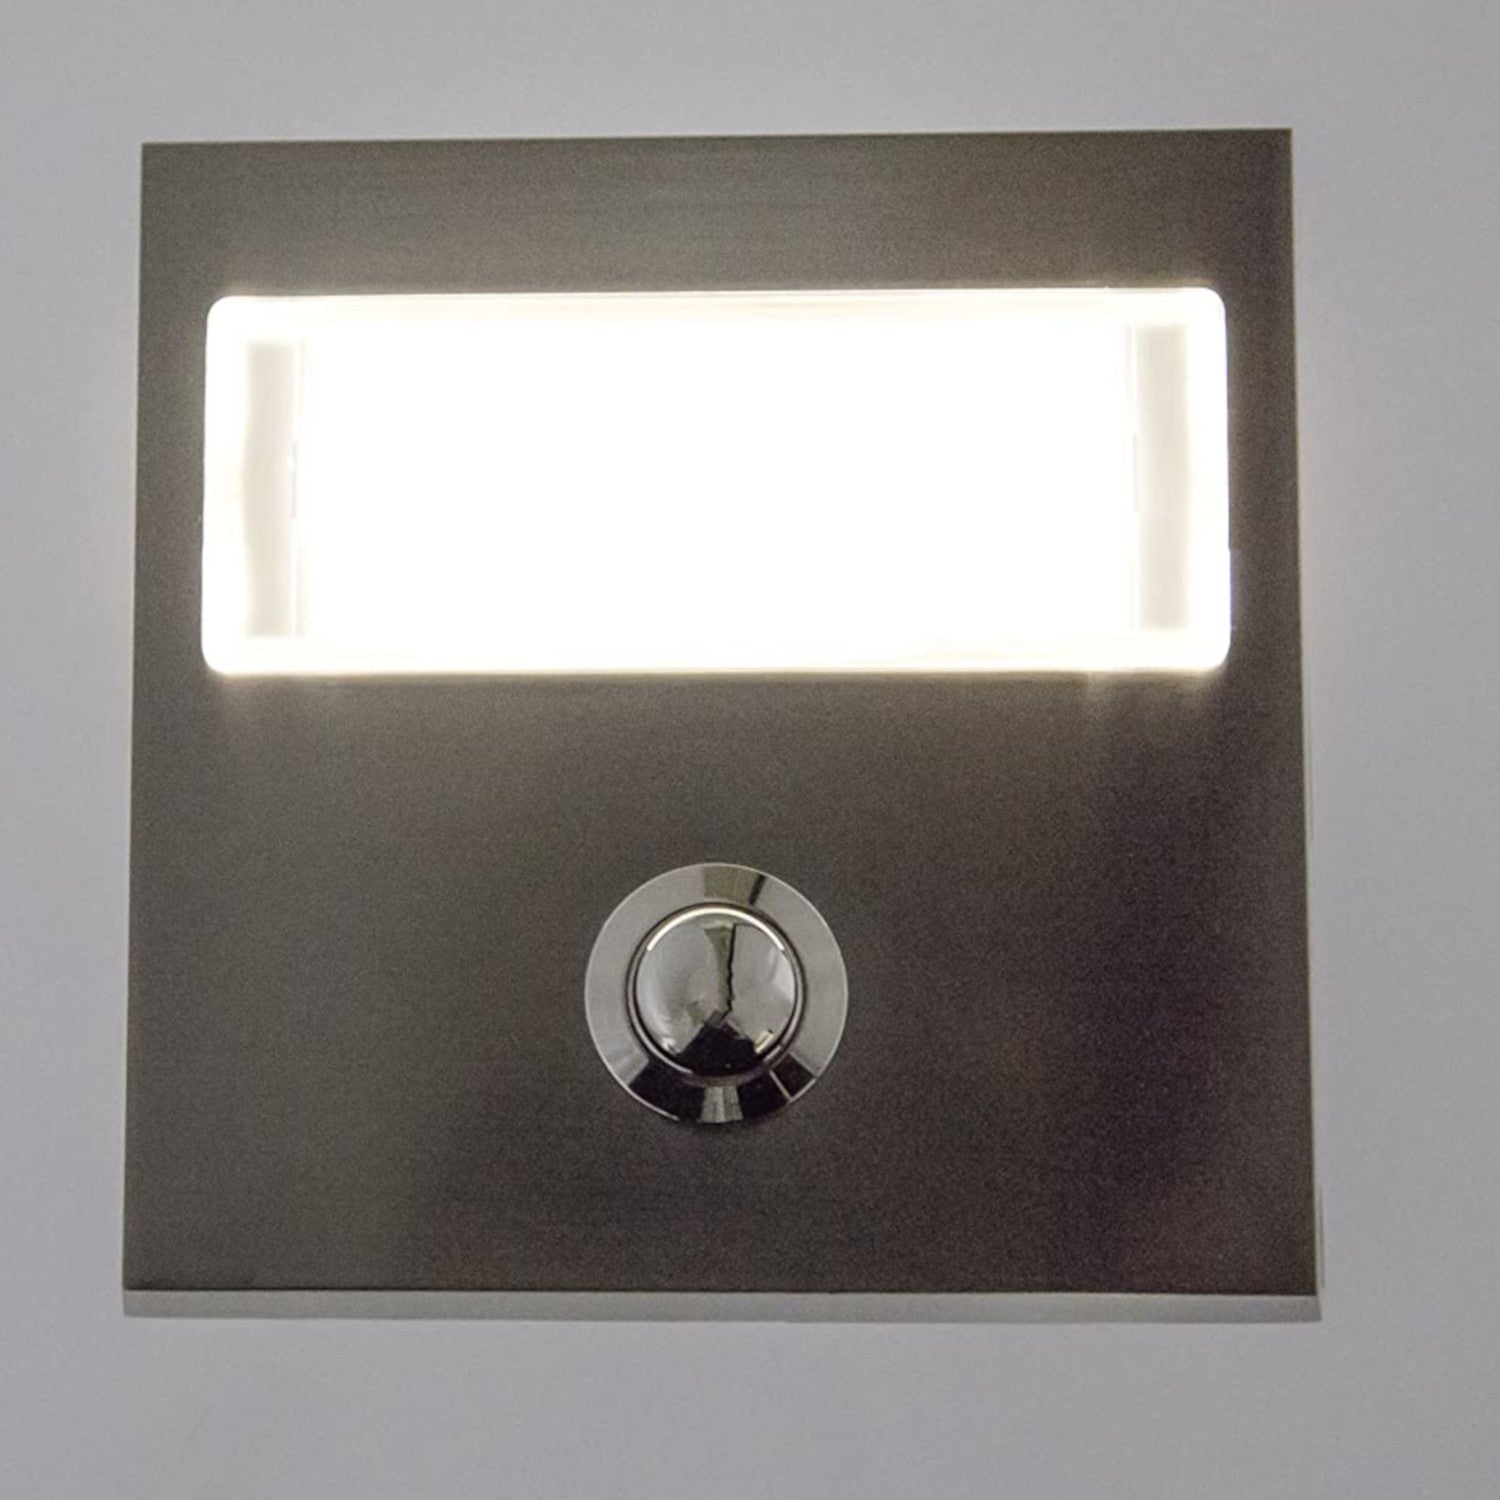 Klingeltaster Aufputzmontage Echtmetall - Türklingelknopf mit extra großem Namensschild, mit LED Hintergrundbeleuchtung, leuchtend